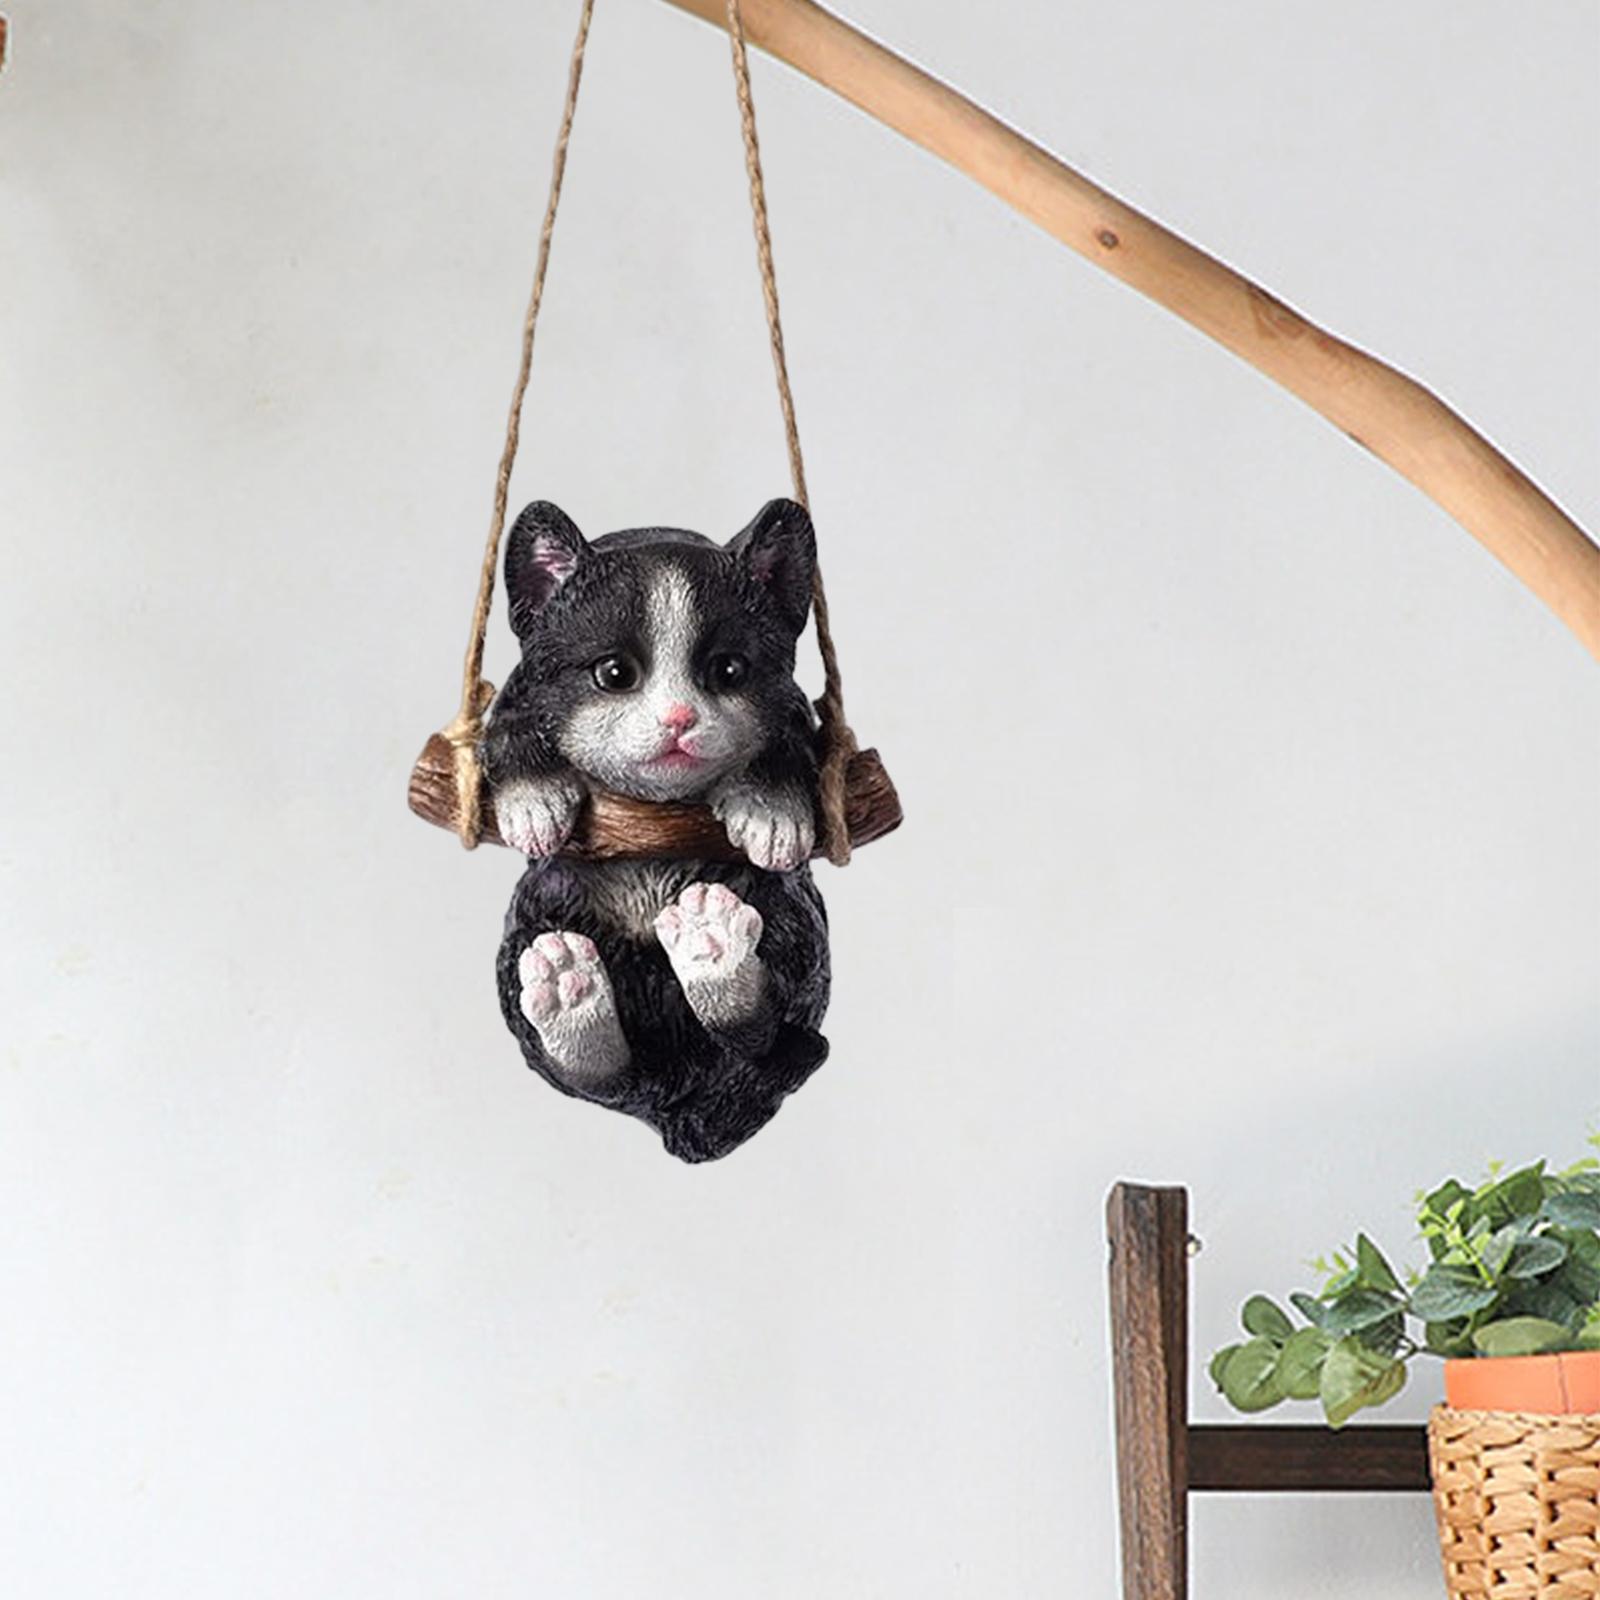 Hanging Swing Cat Statue Garden Figurine Pendant Decorative for Bedroom Home Black